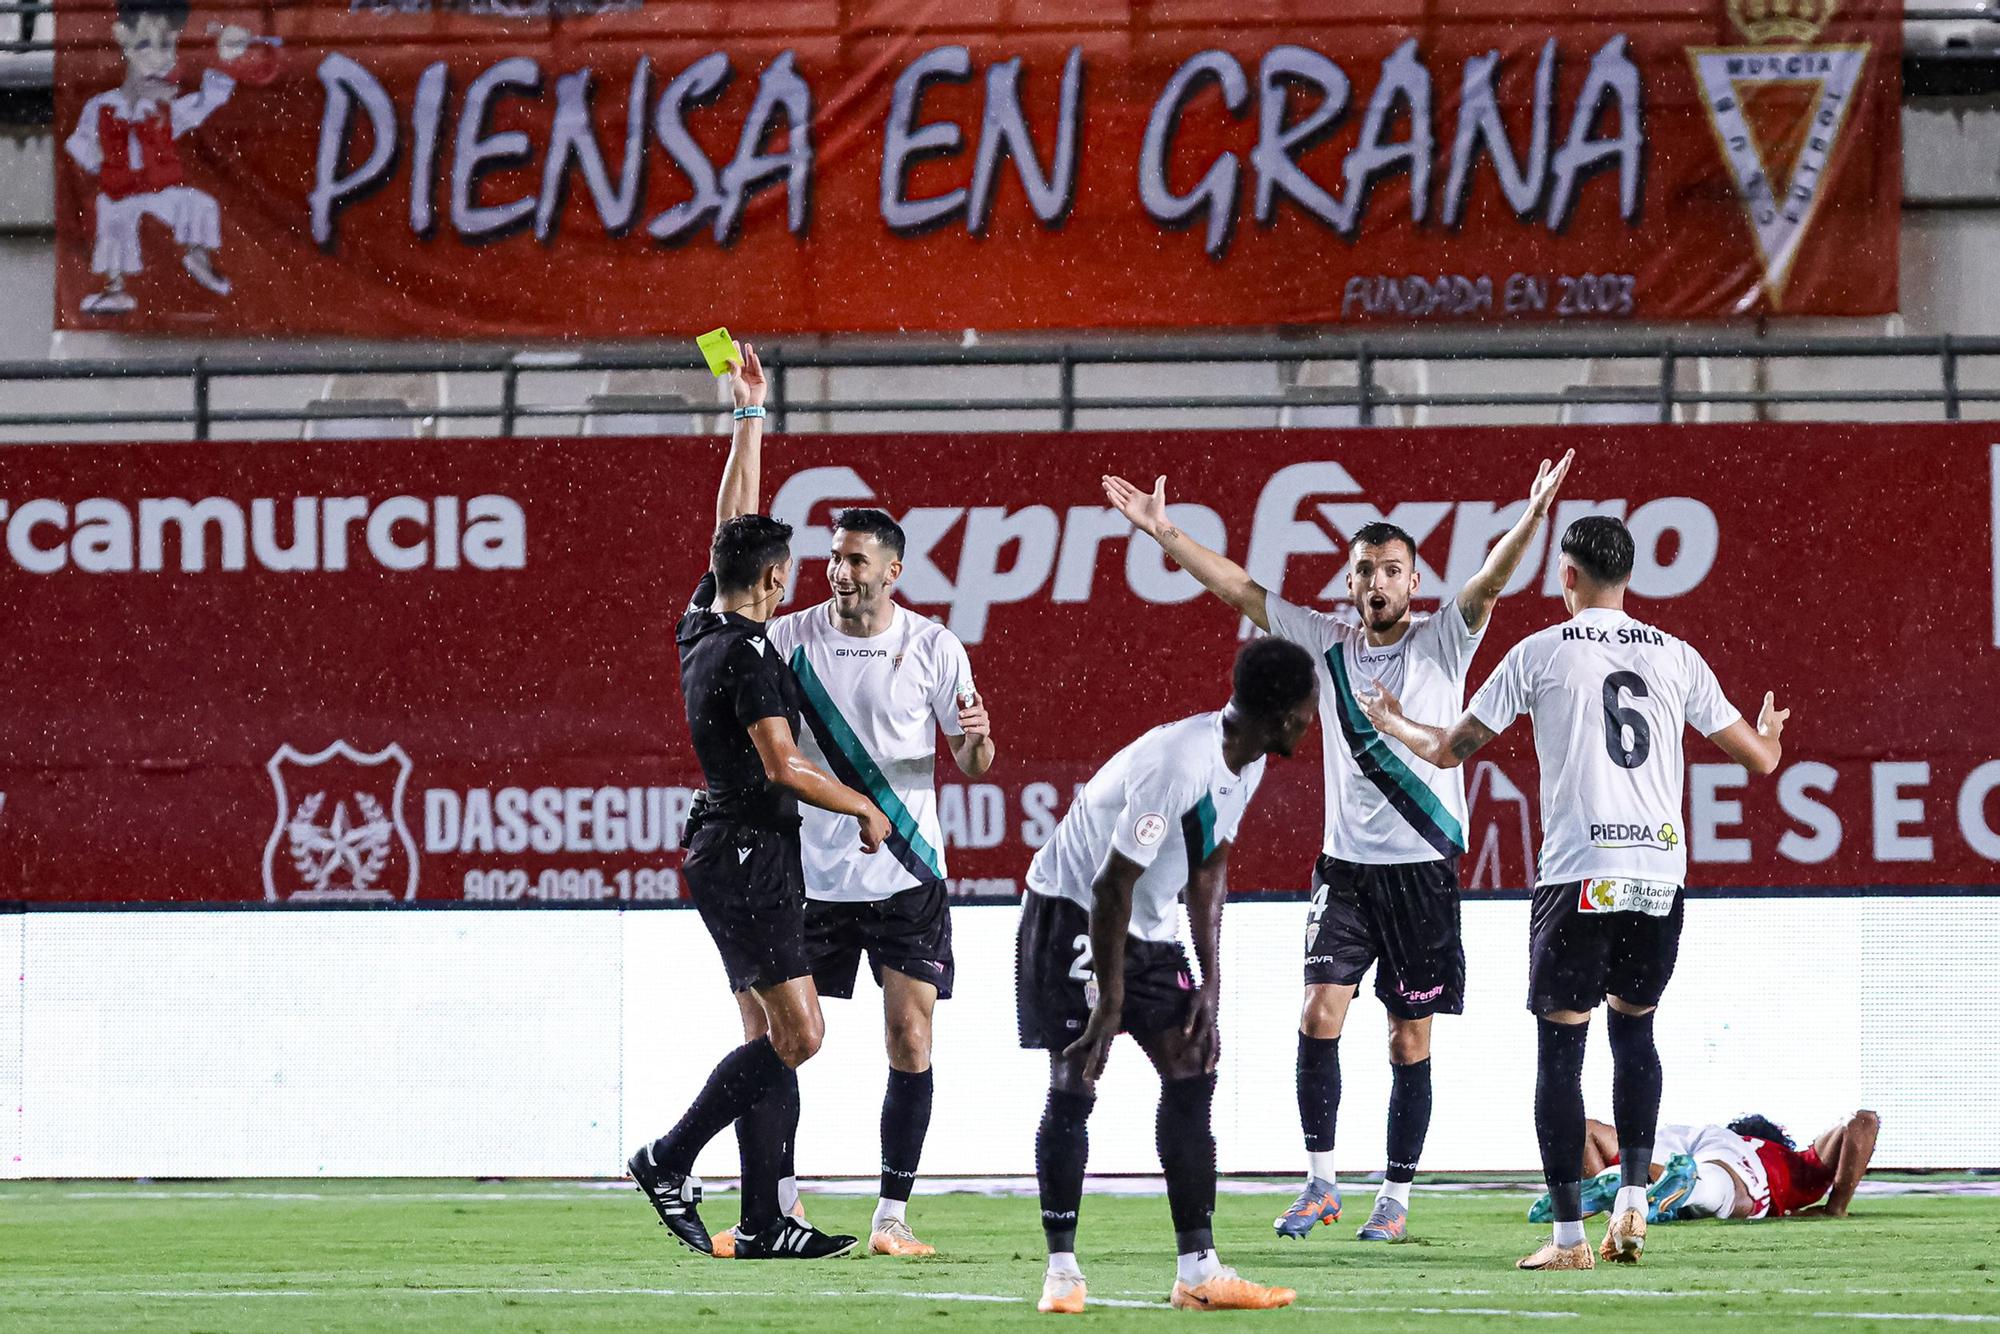 Real Murcia - Córdoba CF : las imágenes del partido en el Enrique Roca